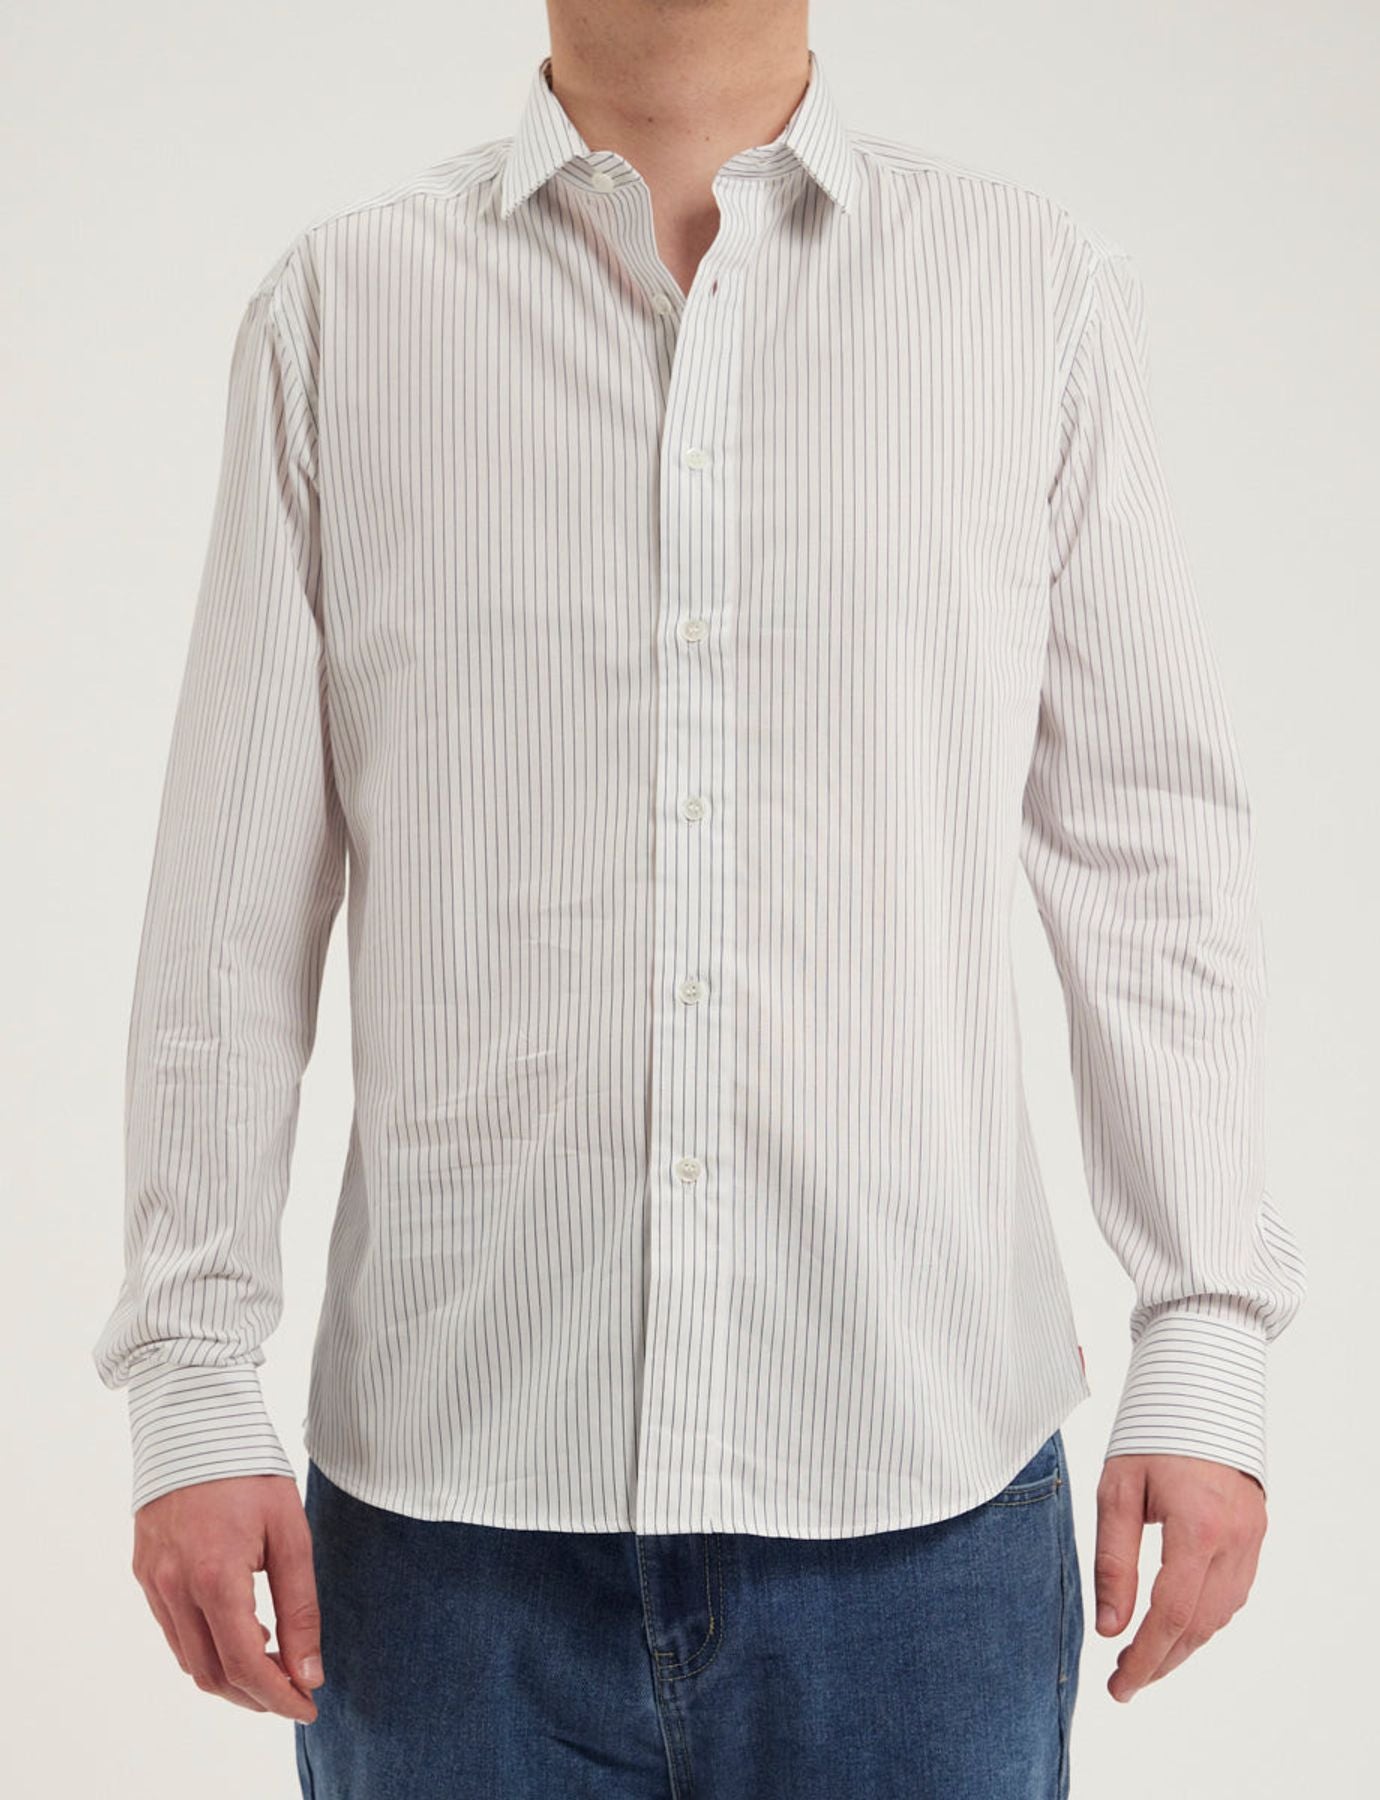 shirt-for-men-white-olivier-blue-striped